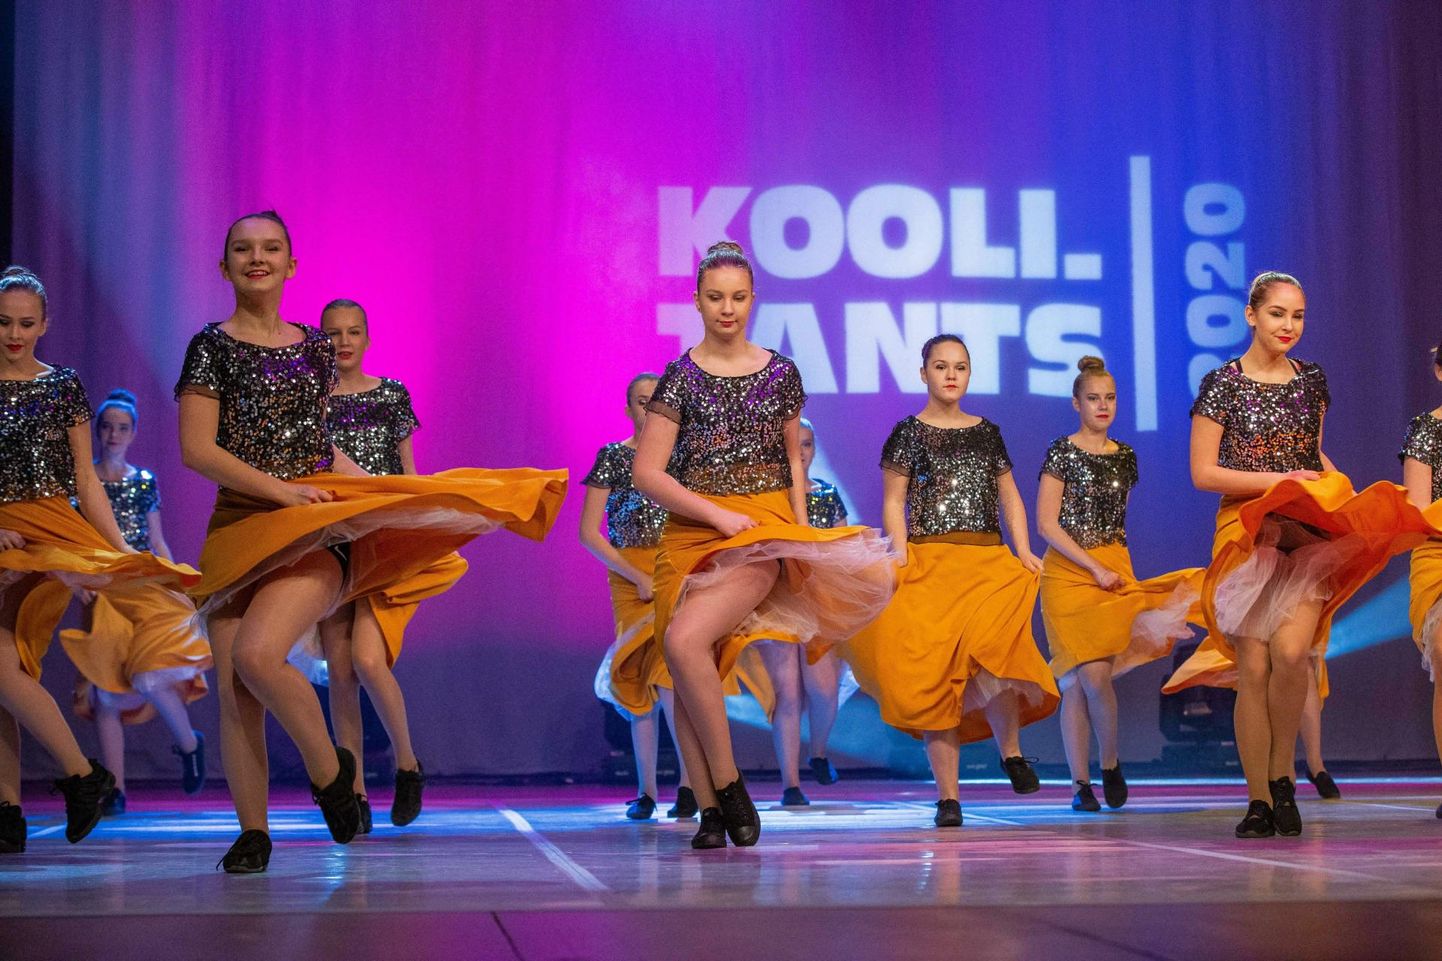 Festivali Koolitants tantsupäevadele pääses meie maakonnast neli tantsu. Foto on illustratiivne.